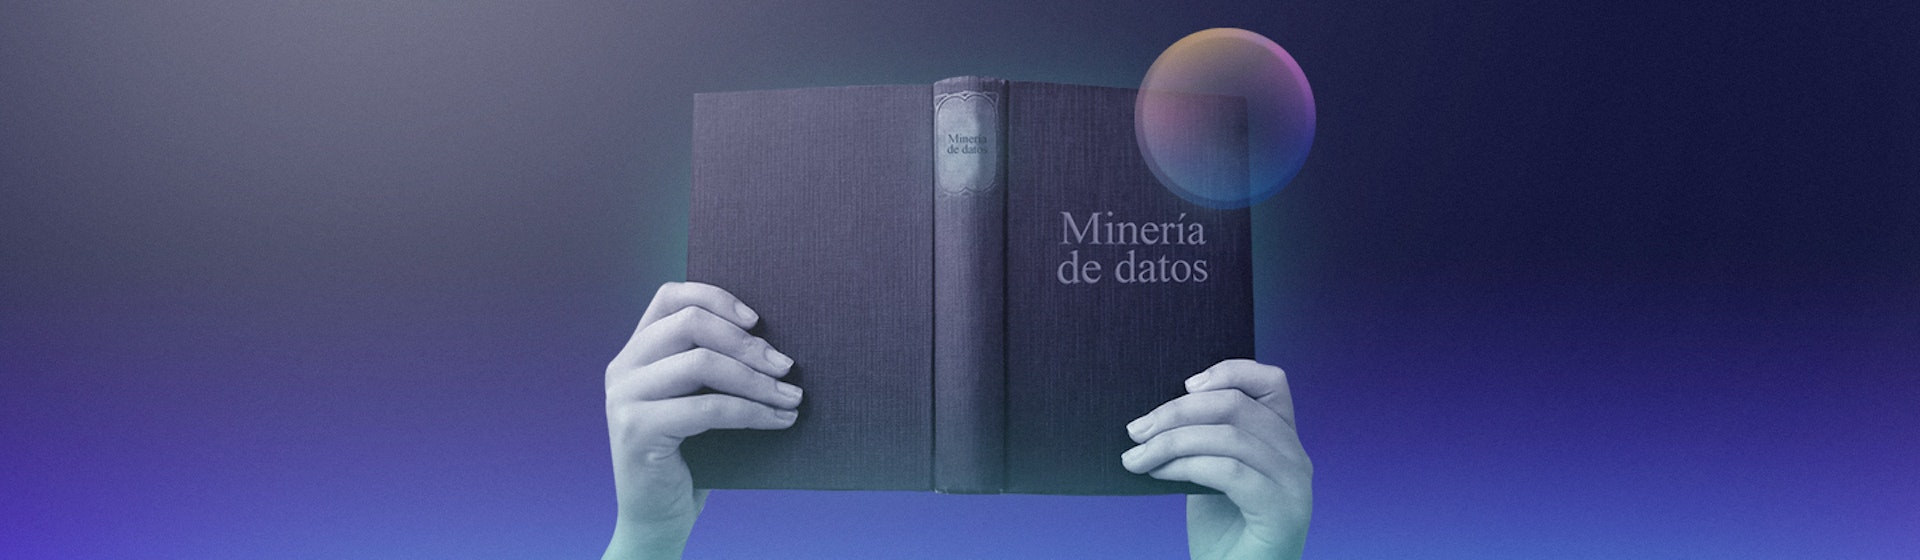 8 libros de minería de datos para científicos de datos y principiantes del data mining